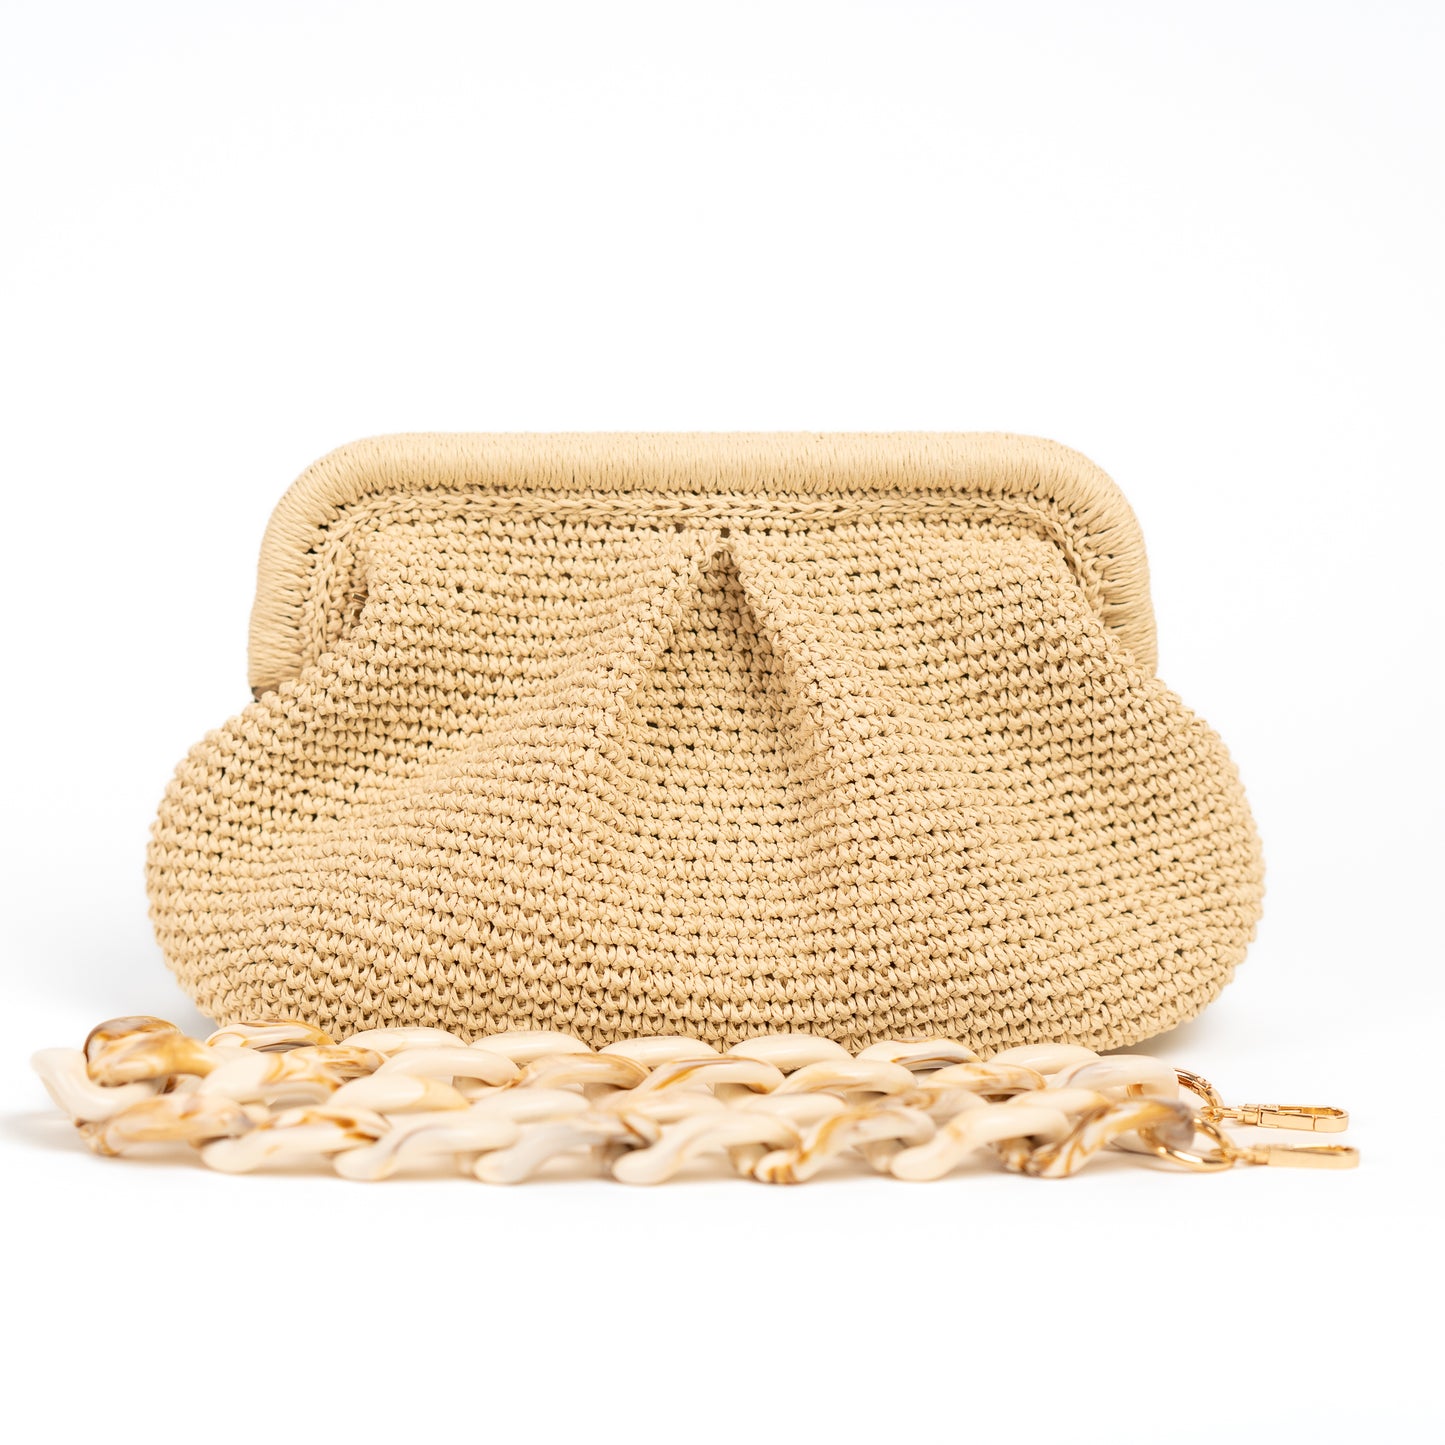 Raffia beach bag, Straw